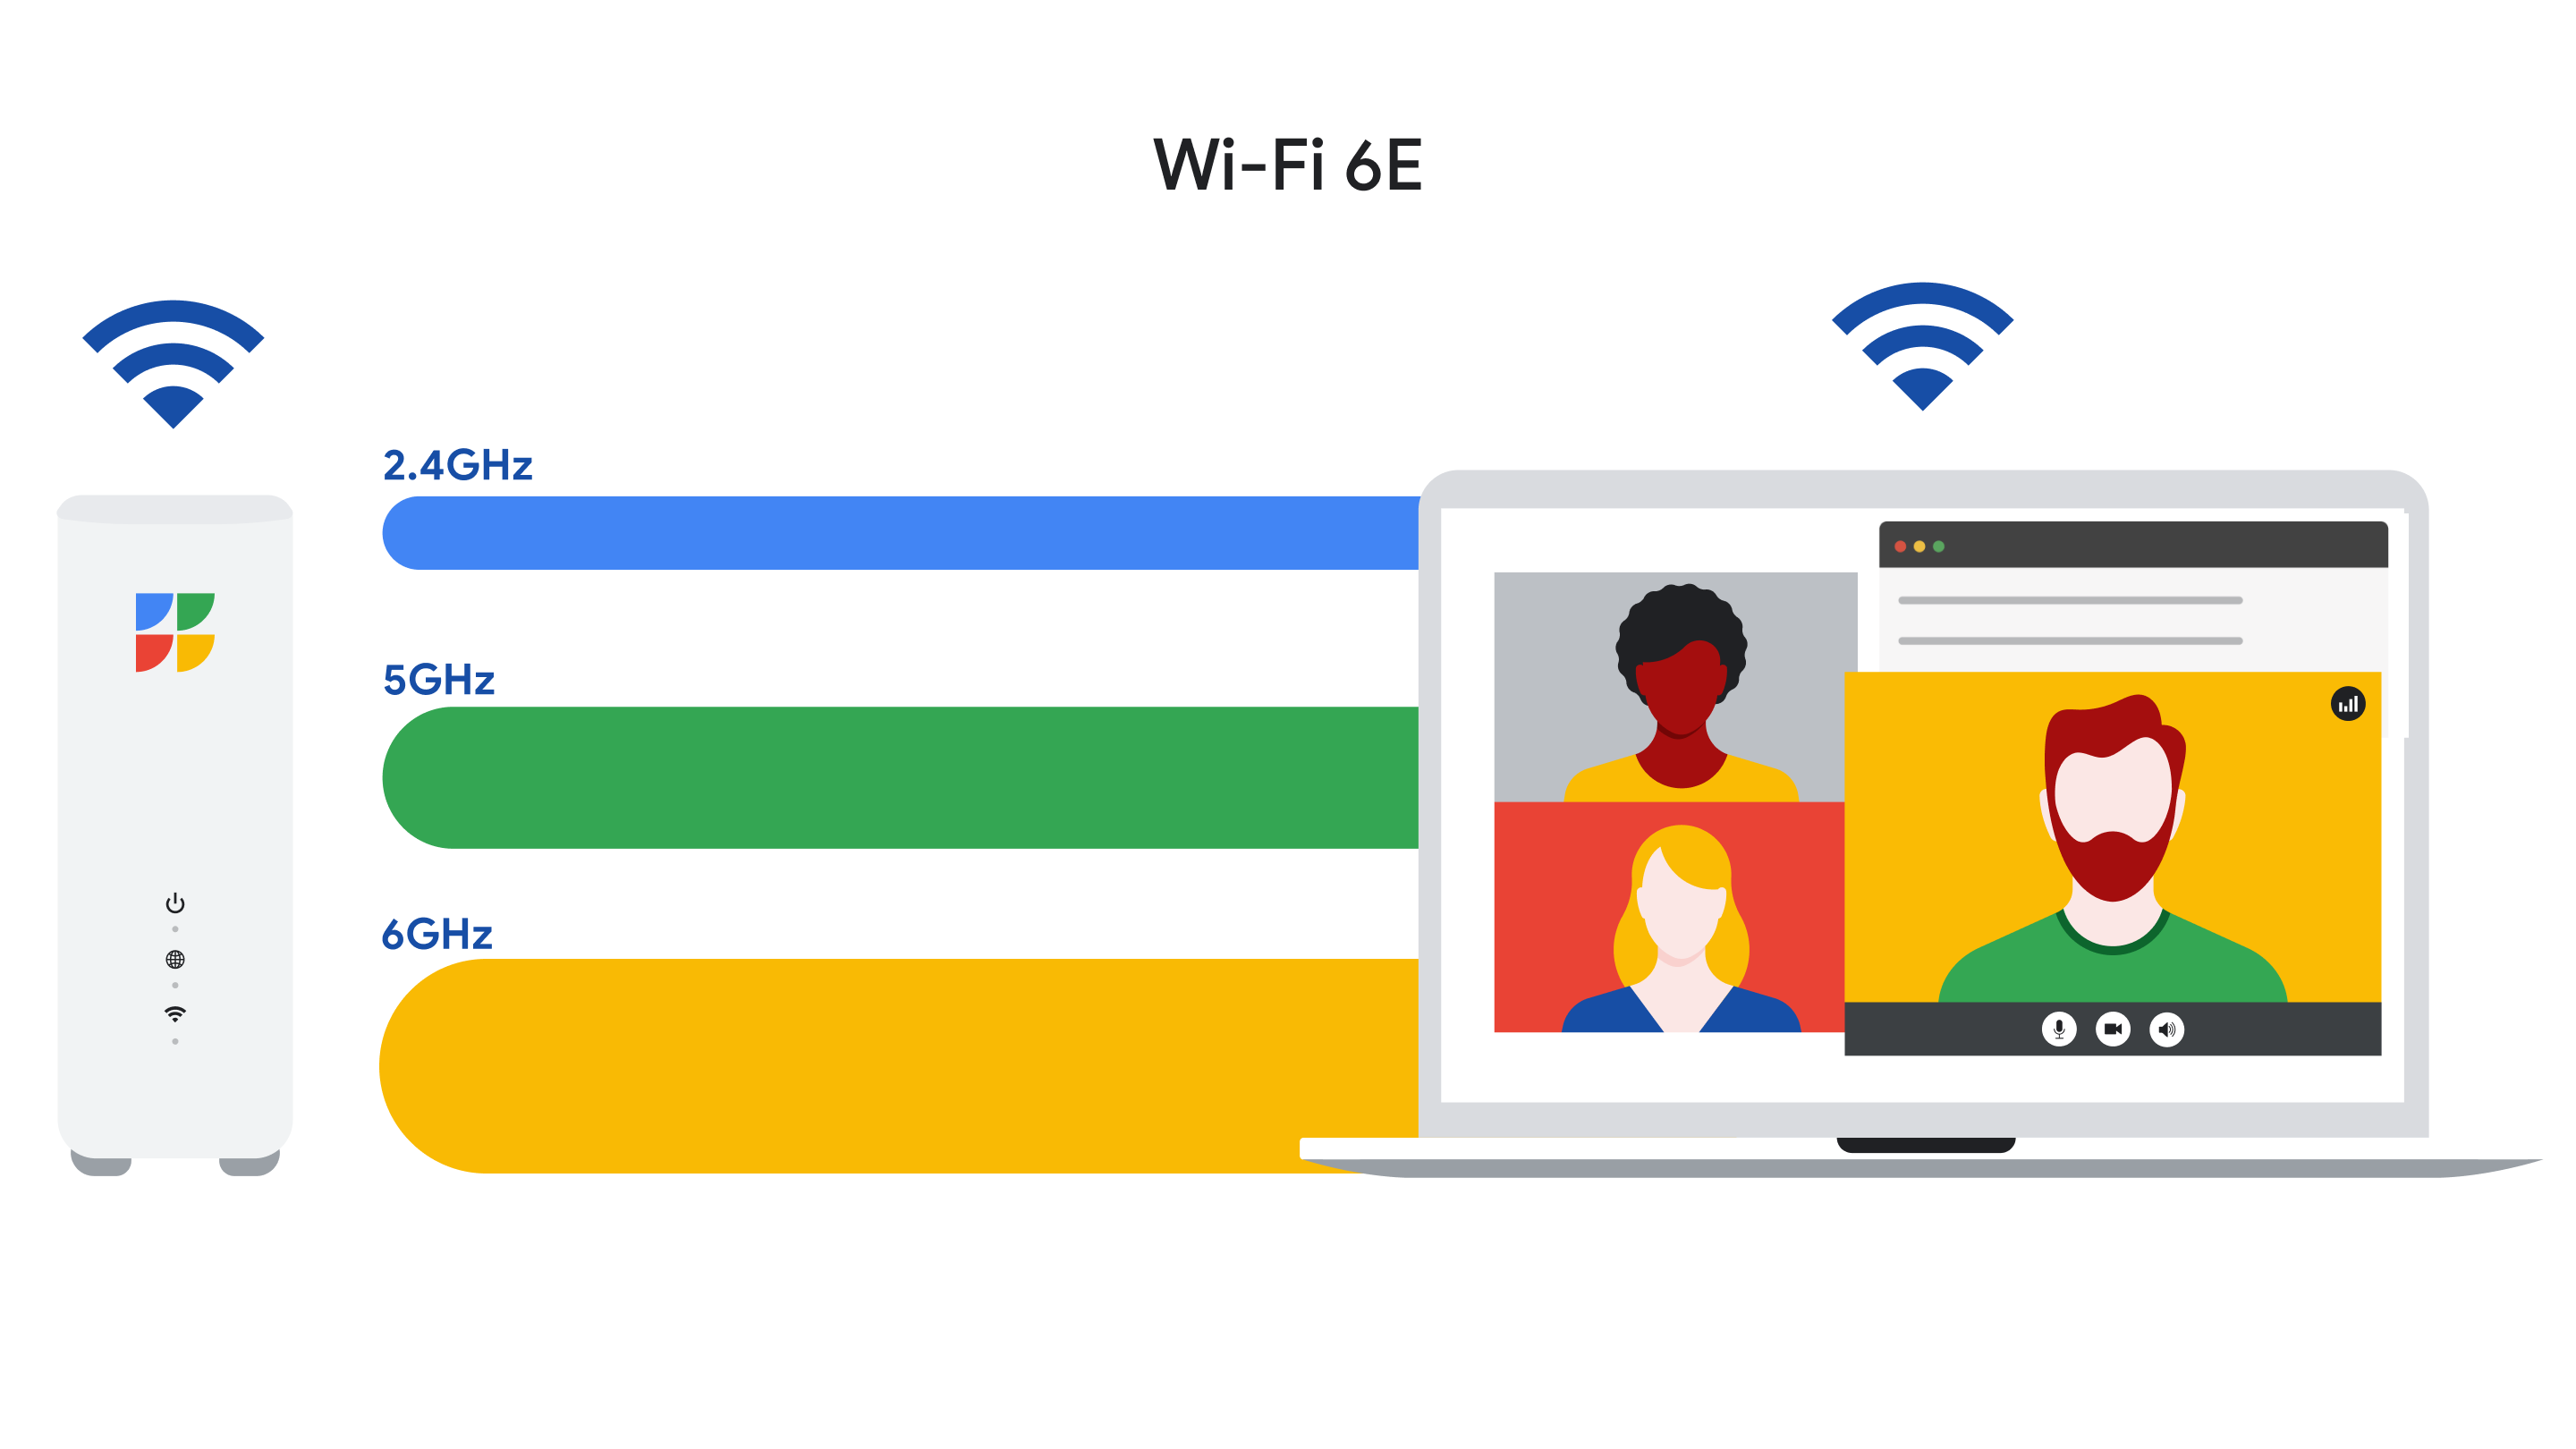 Wi-Fi 6E Image - Wi-Fi